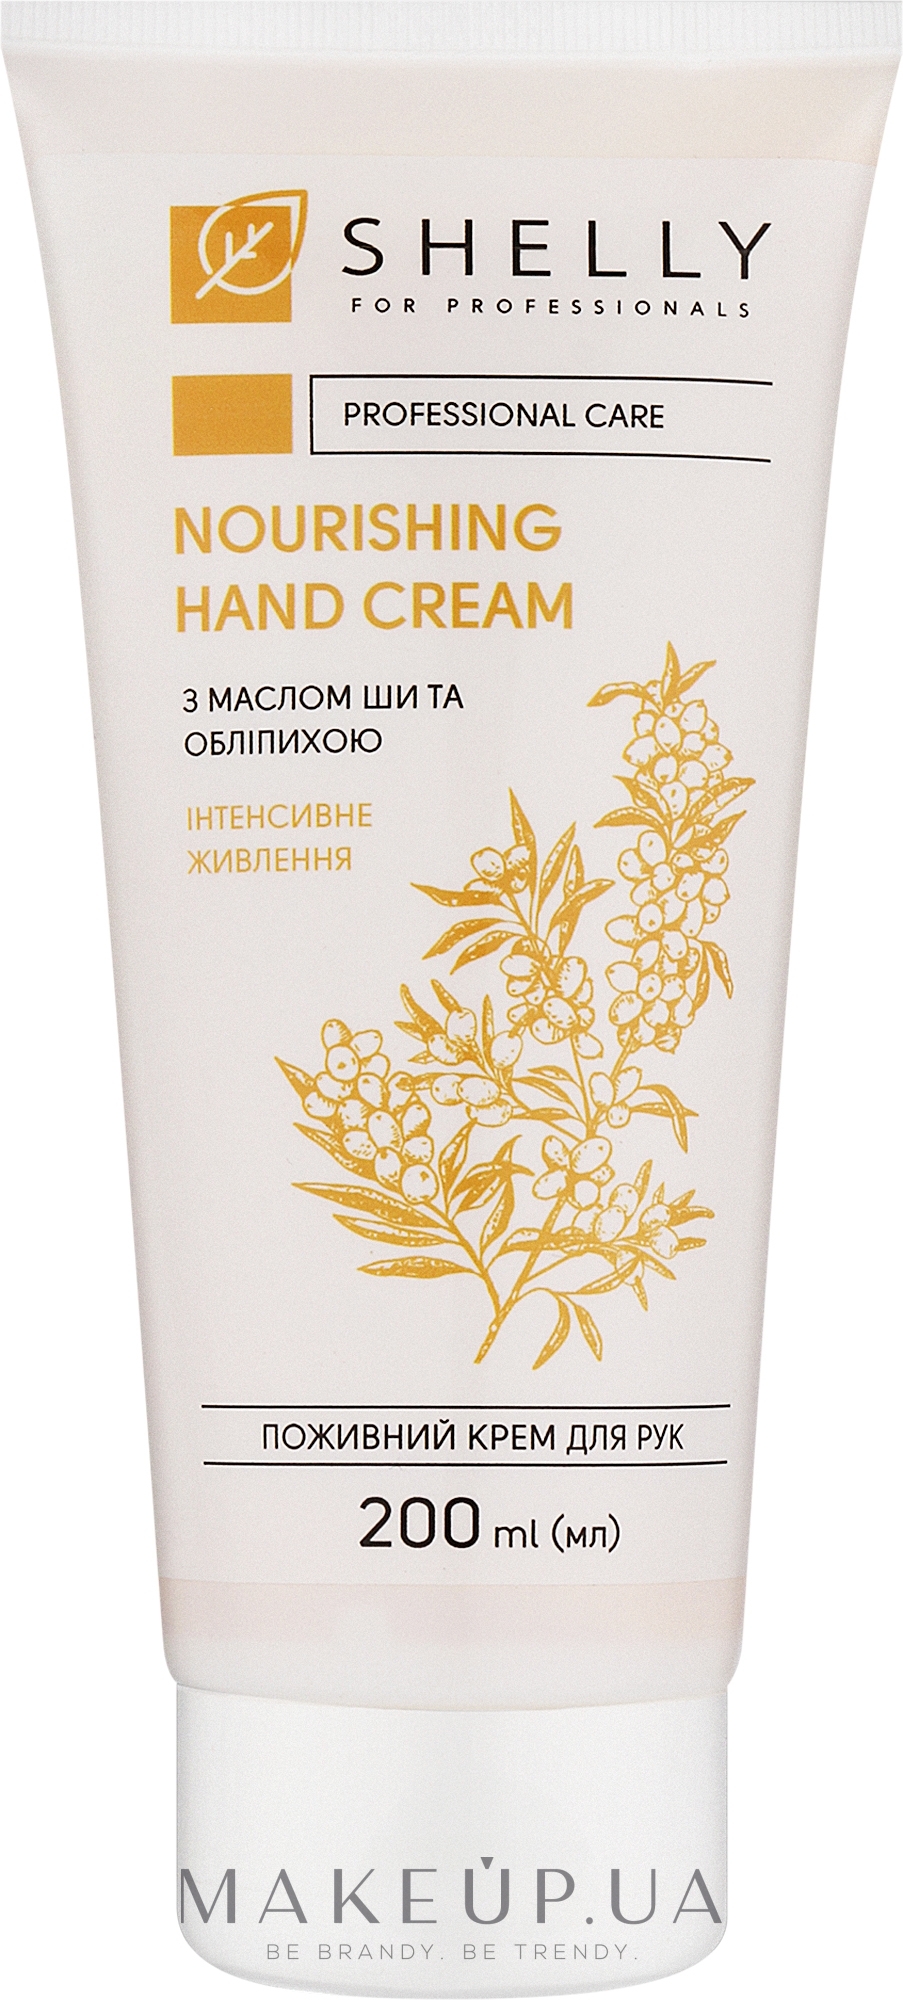 Живильний крем для рук з маслом ши та обліпихою - Shelly Nourishing Hand Cream — фото 200ml